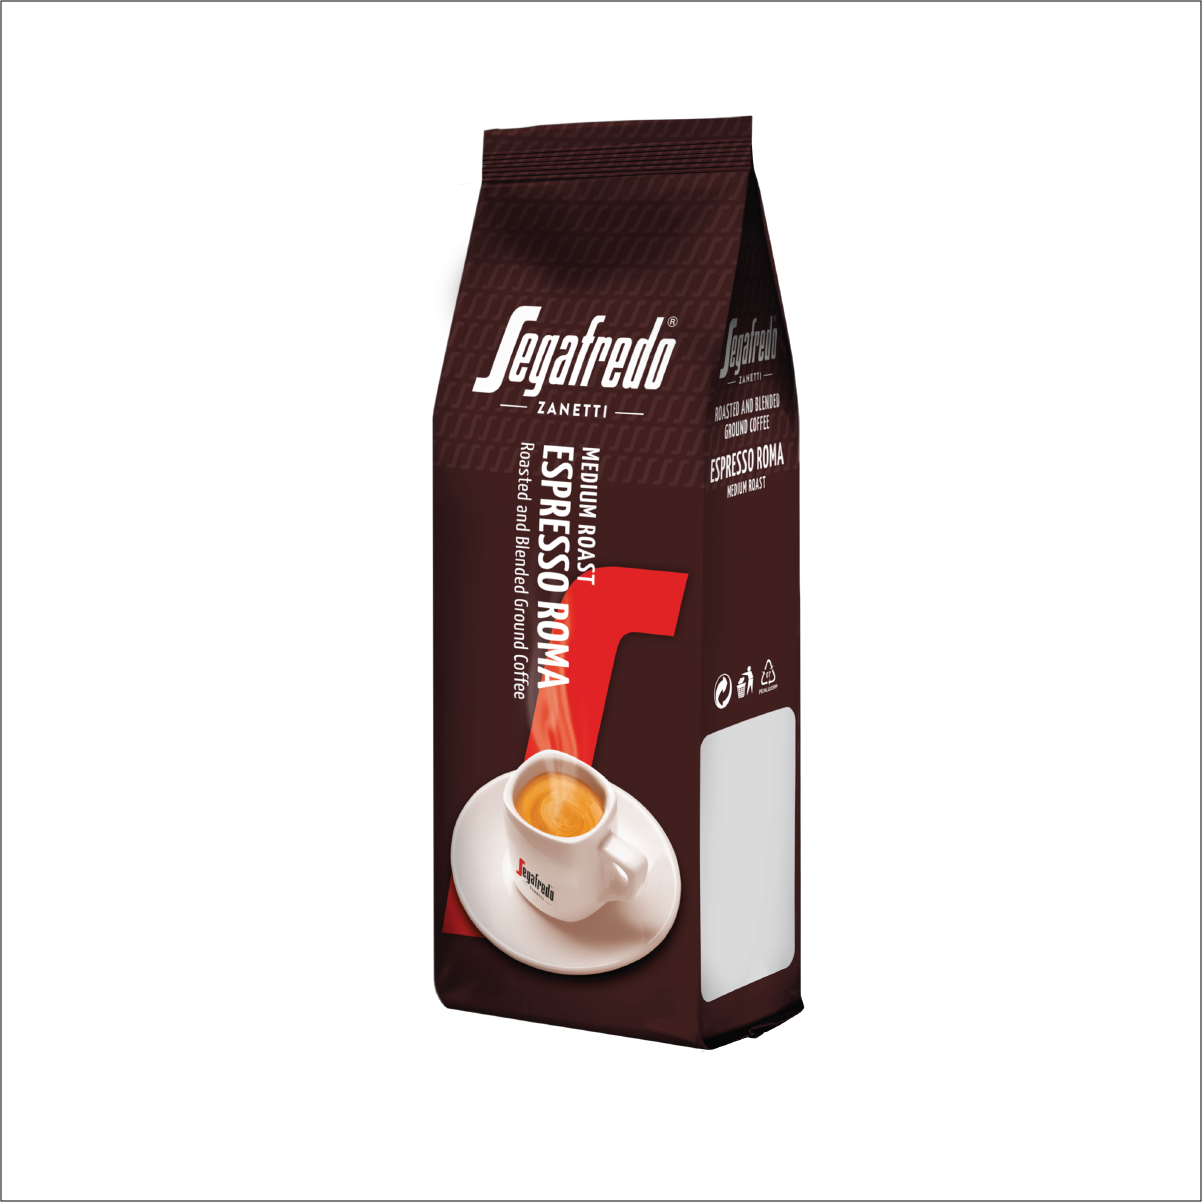 Segafredo Zanetti - Espresso Roma Beans 500g